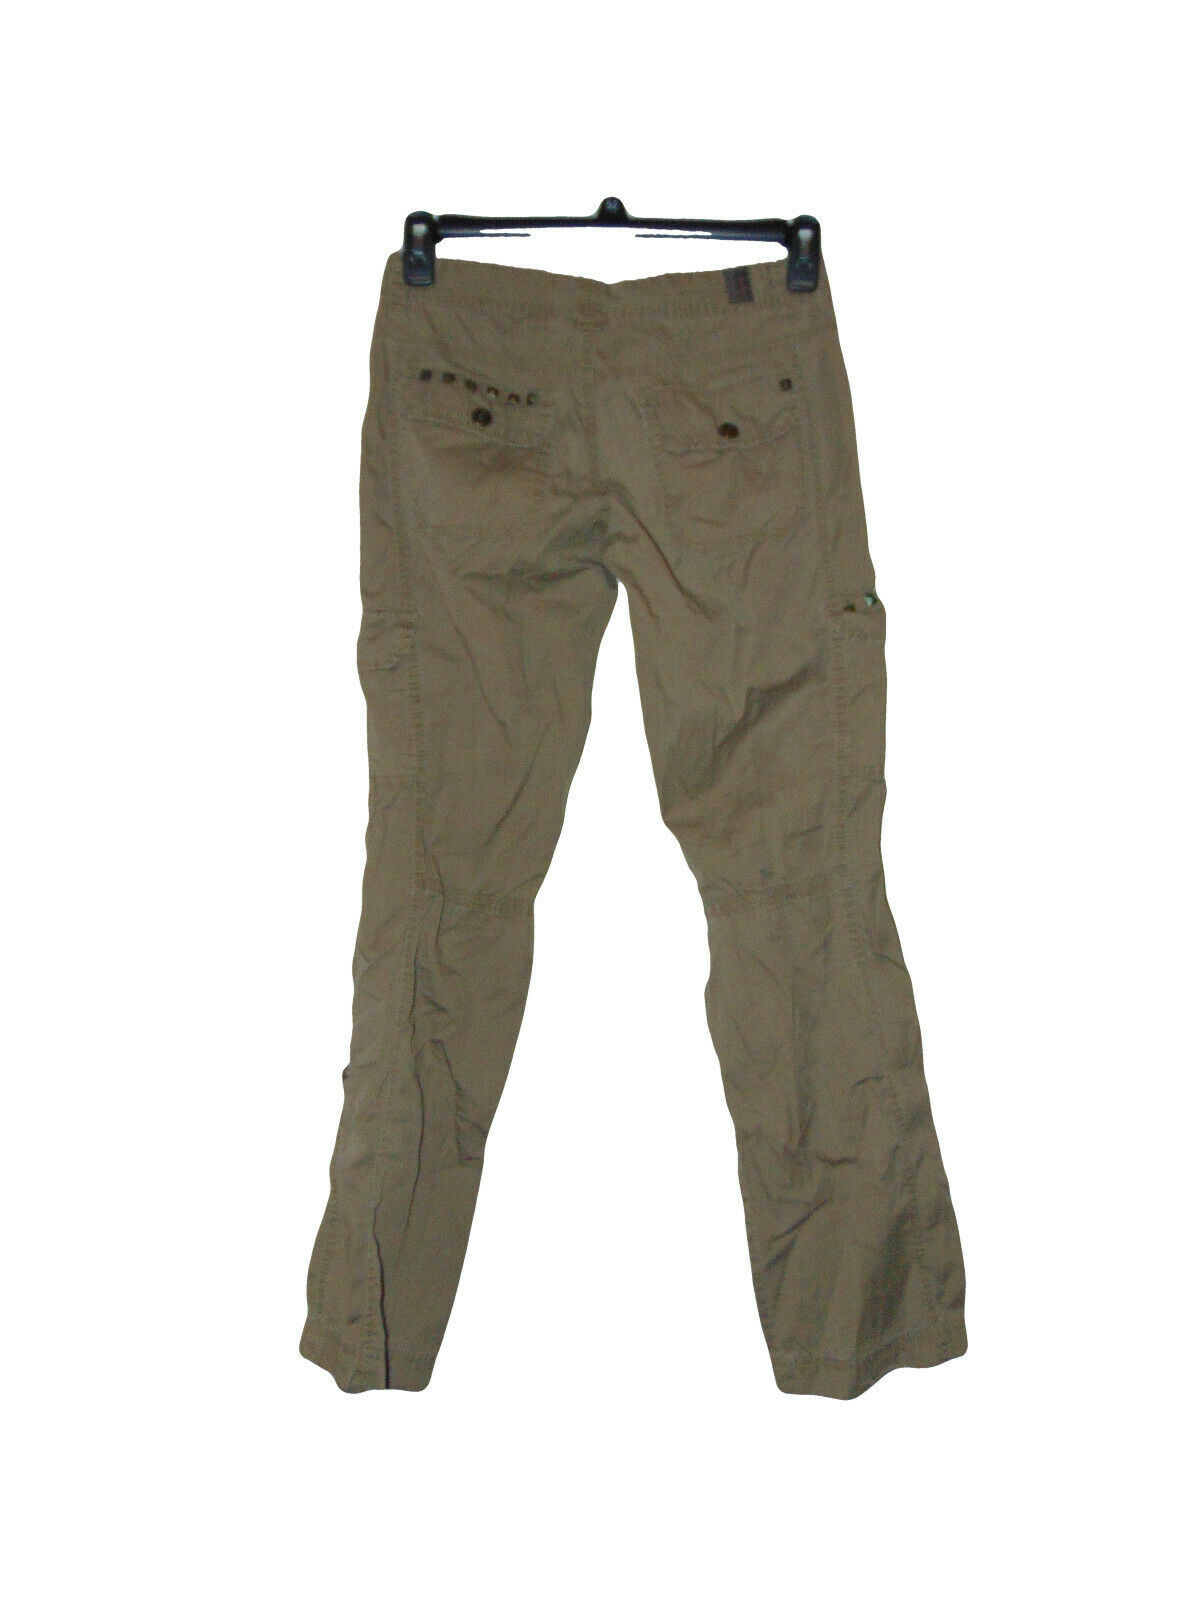 Unionbay Cotton Green Cargo Pants 3 Jr Women - Pants